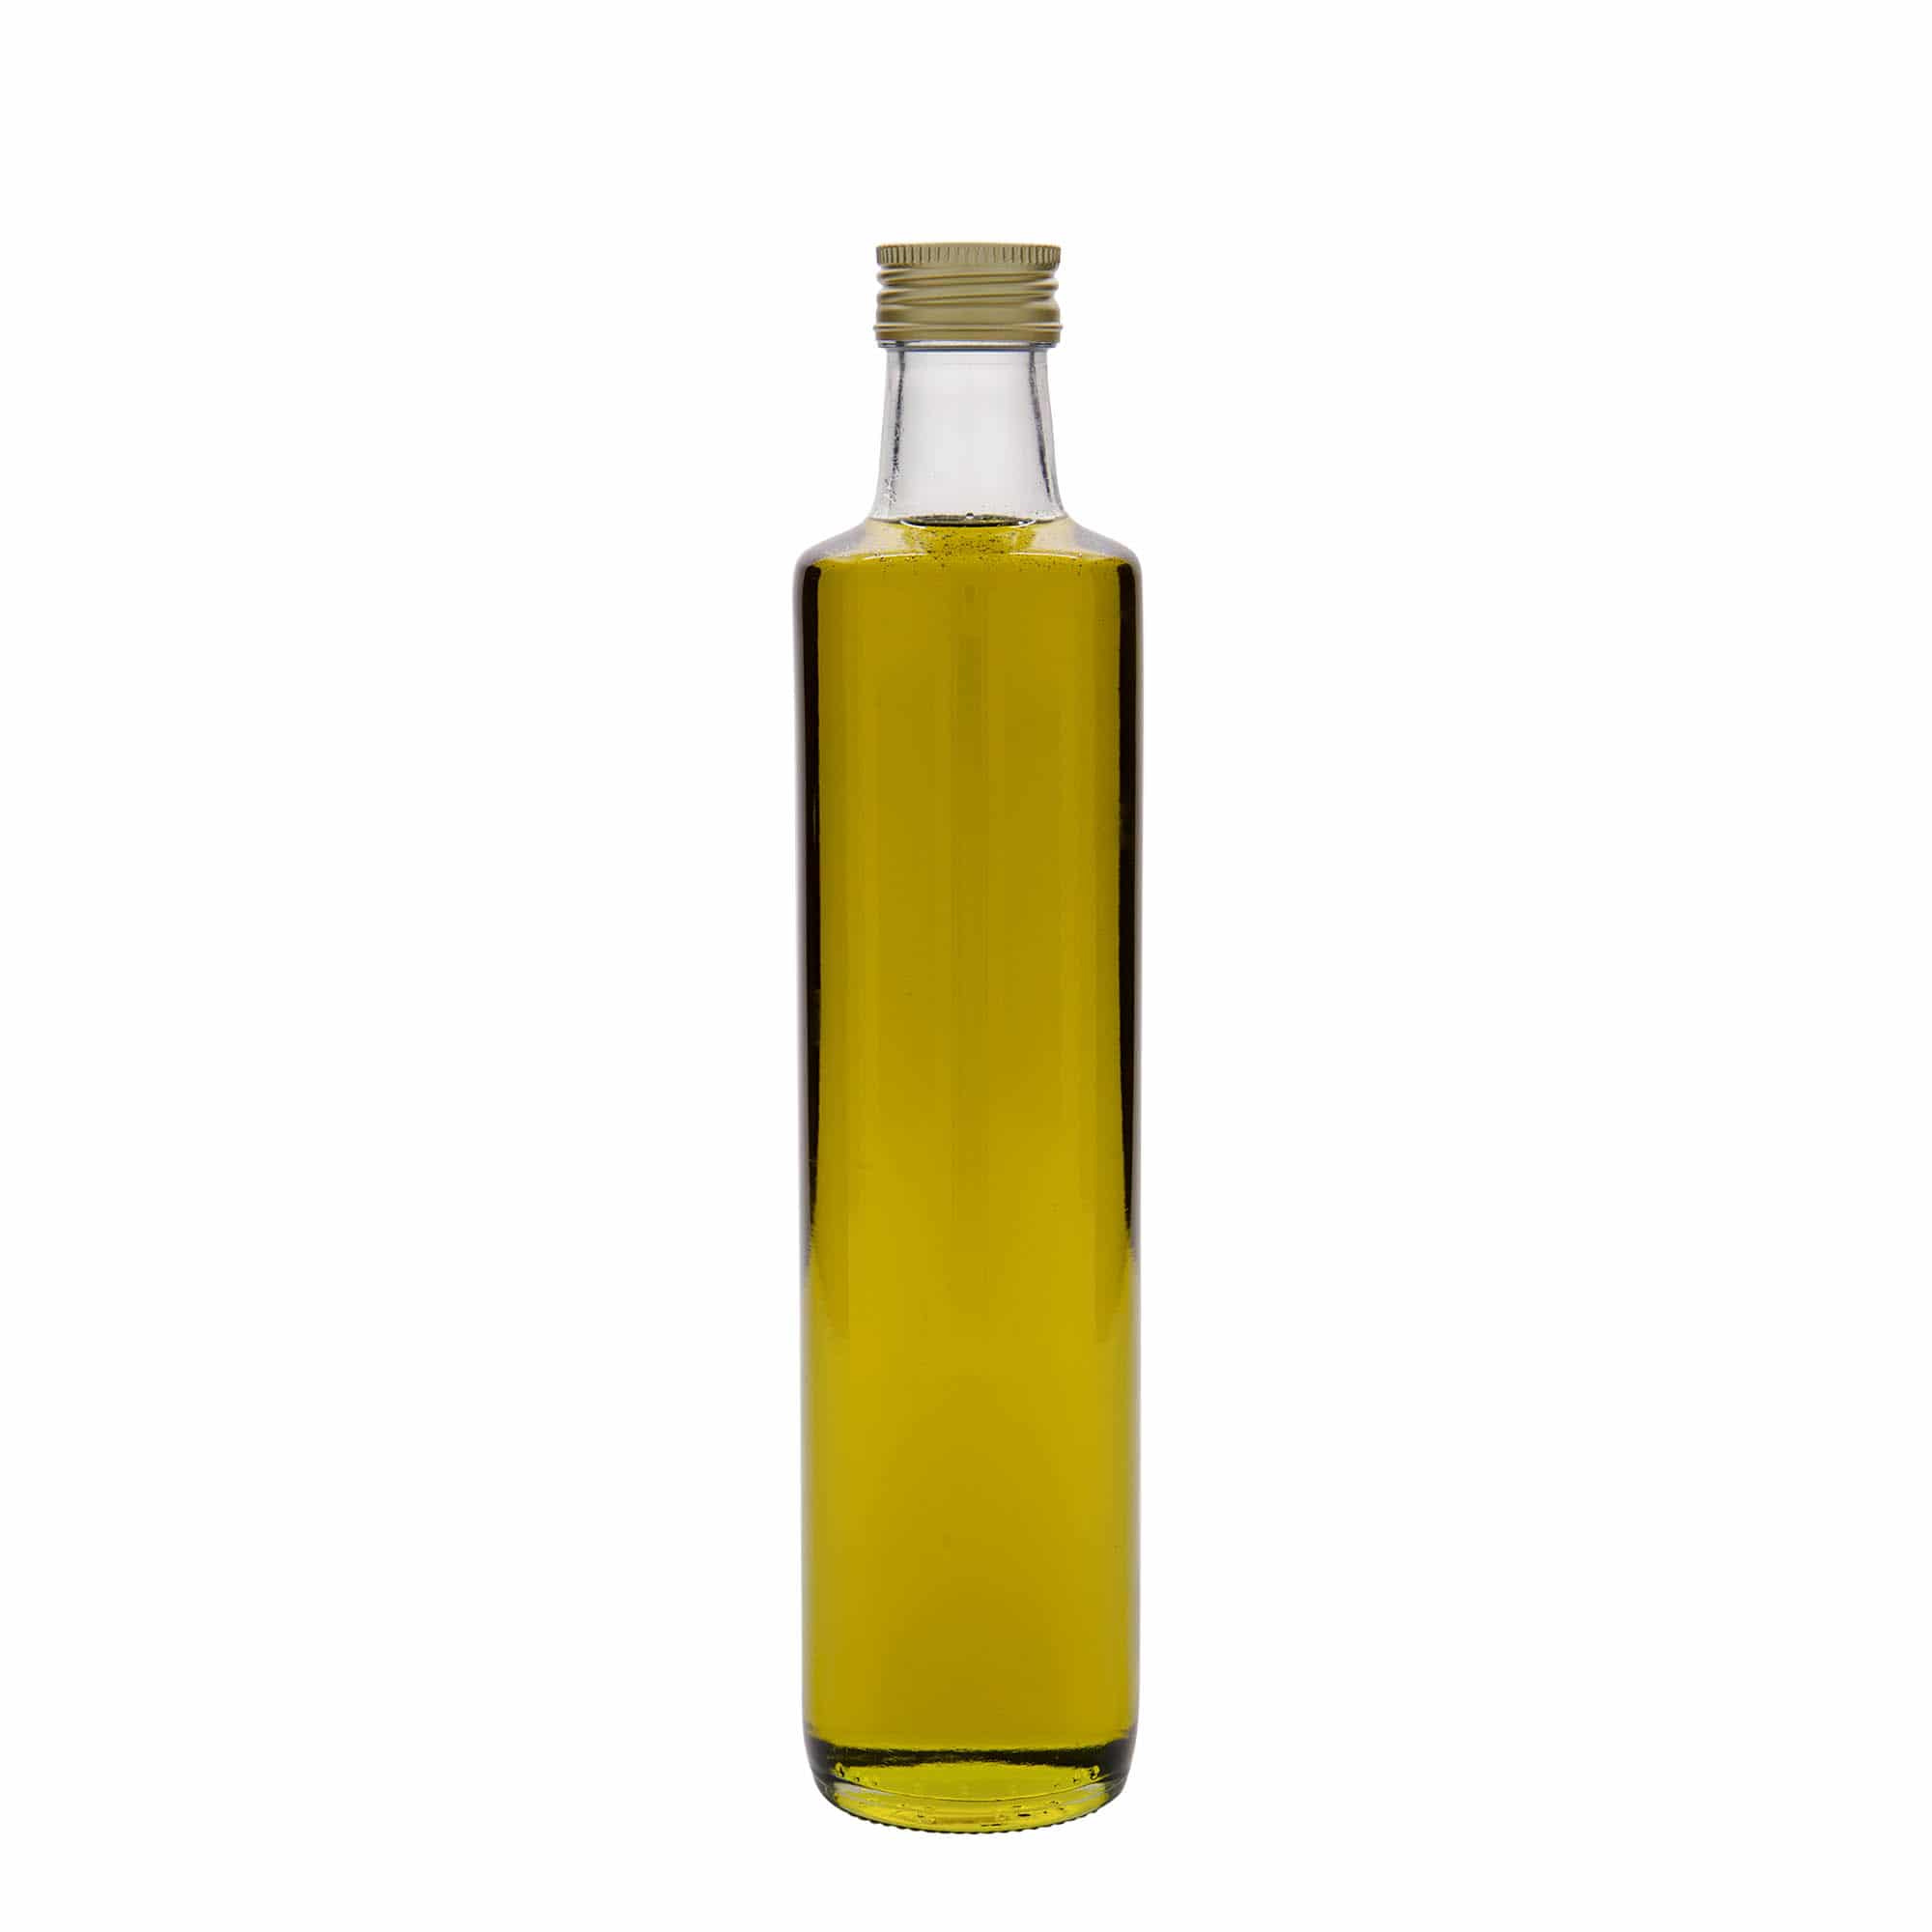 Skleněná lahev 500 ml 'Dorica', uzávěr: PP 31,5